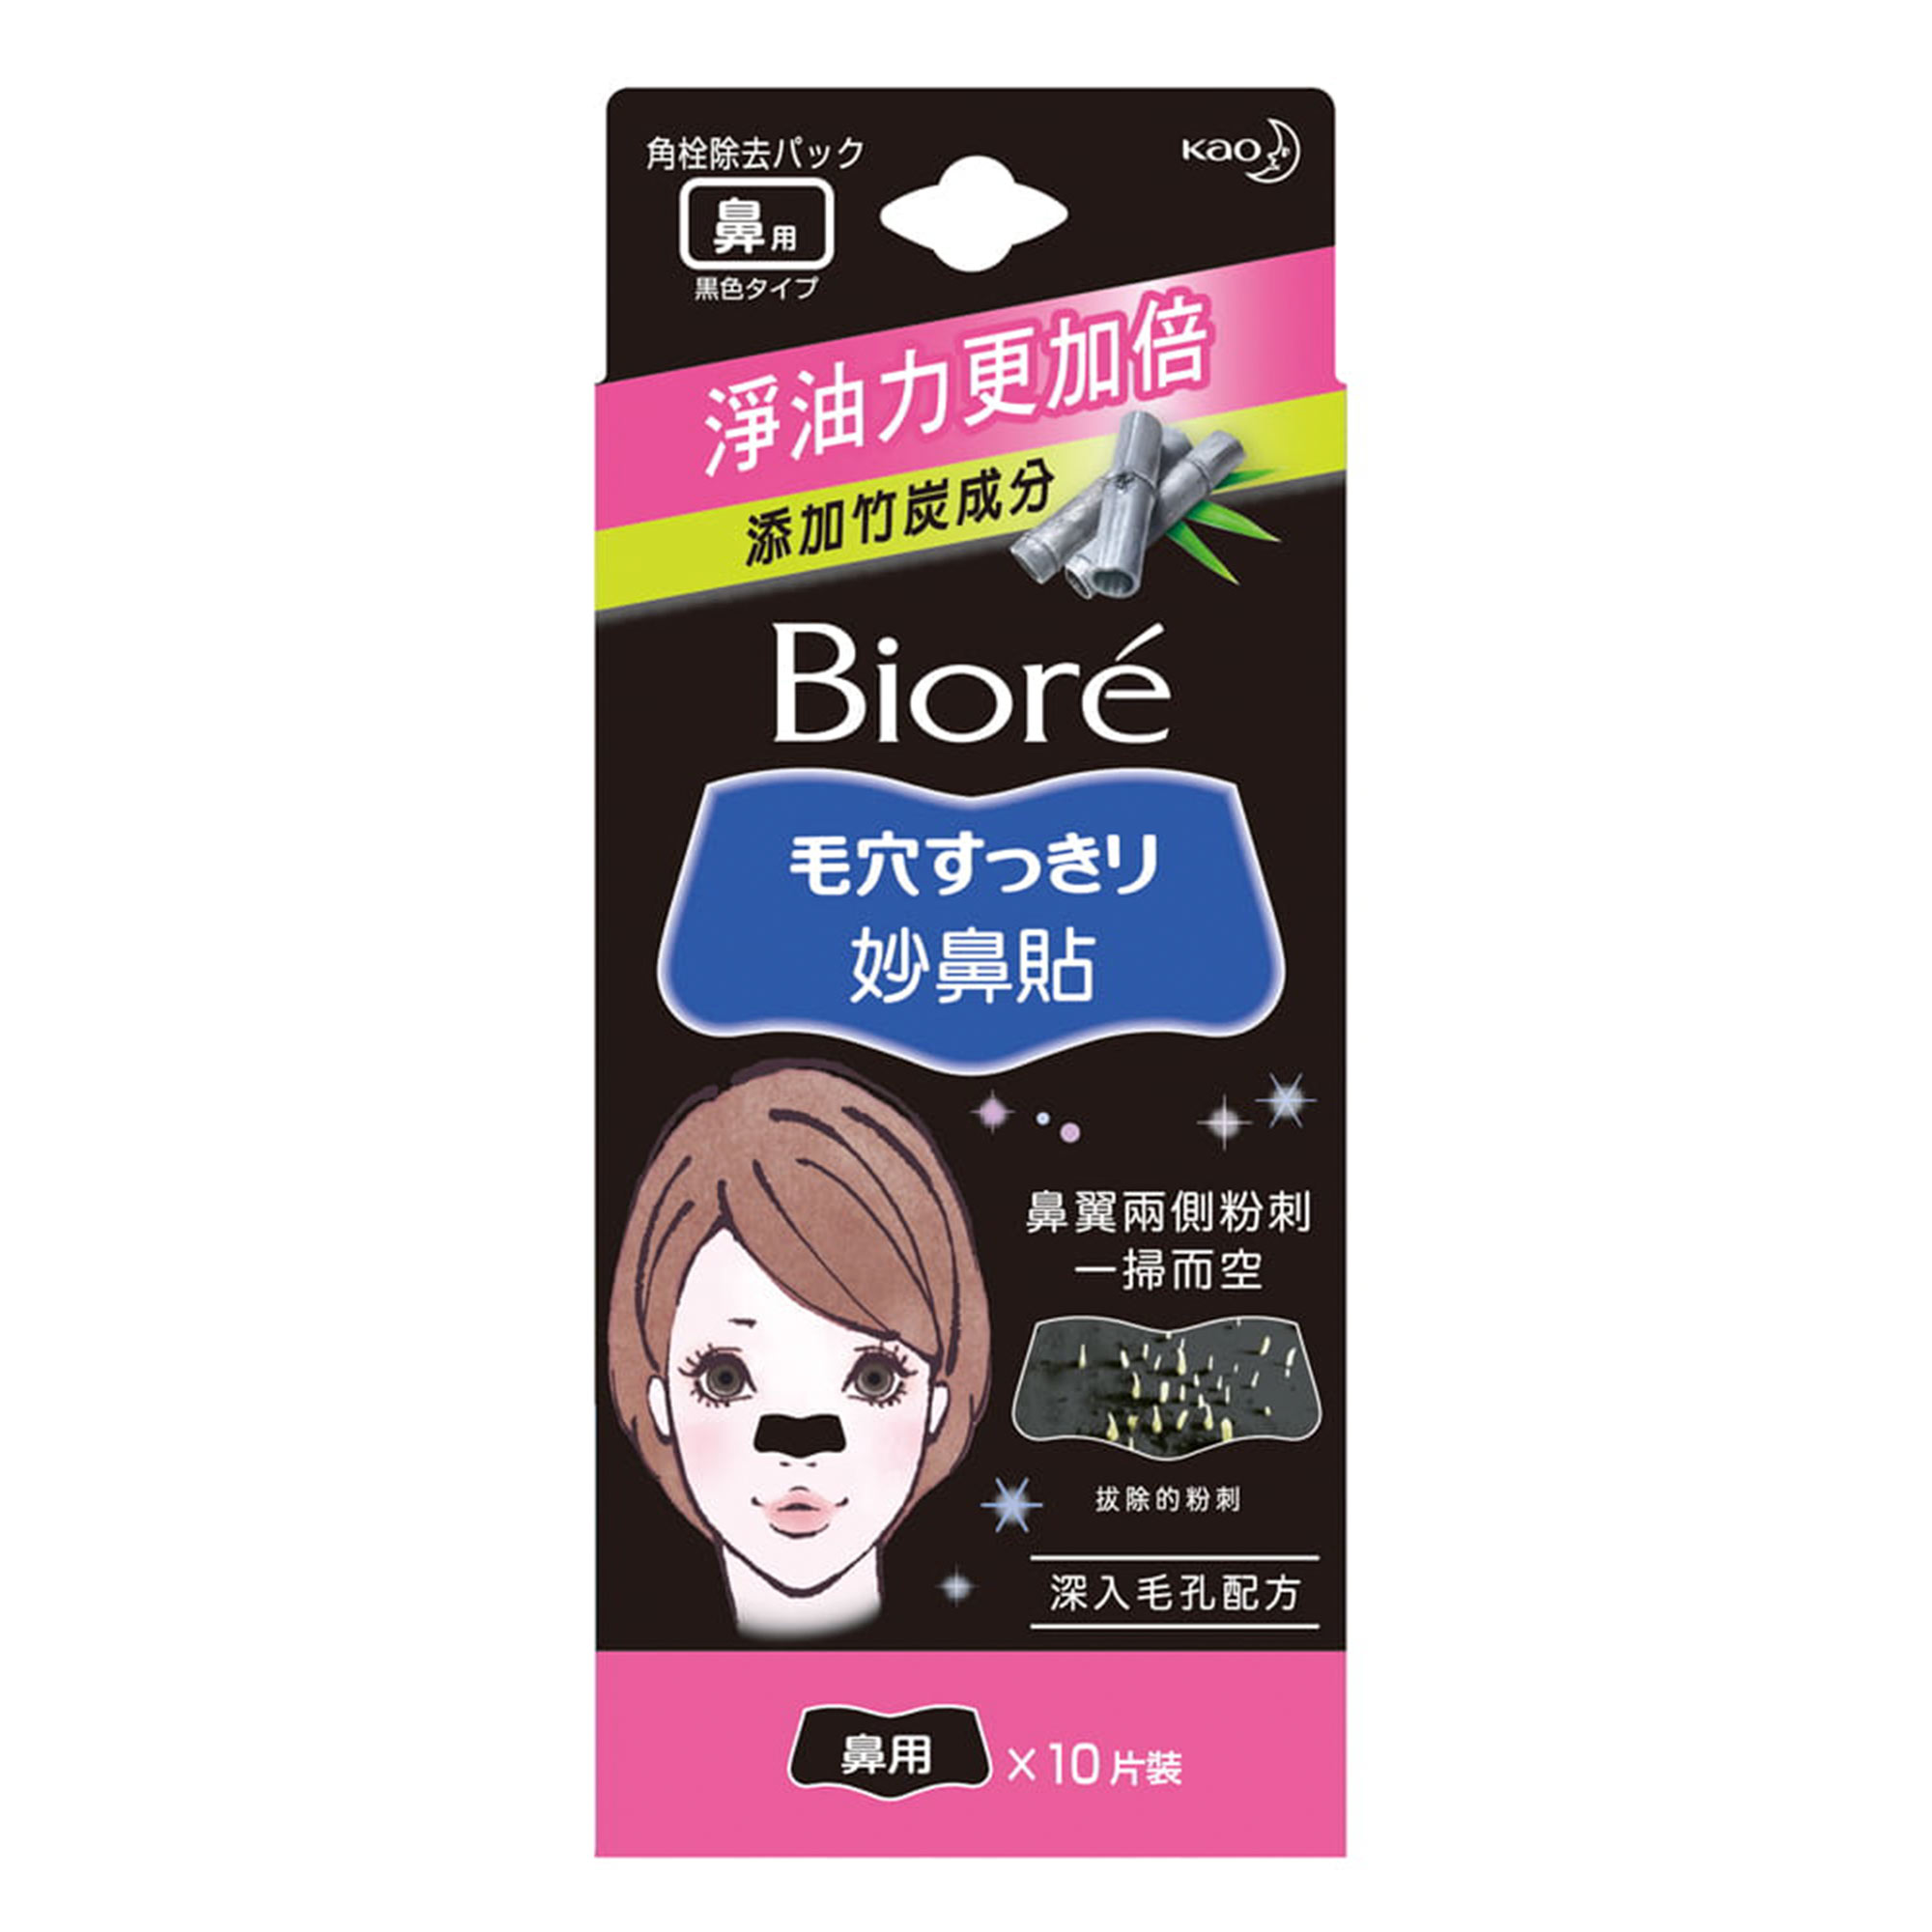 Очищающие полоски для носа Biore  с бамбуковым углем 10 шт полоски для квиллинга 100 полосок плотность 120 гр